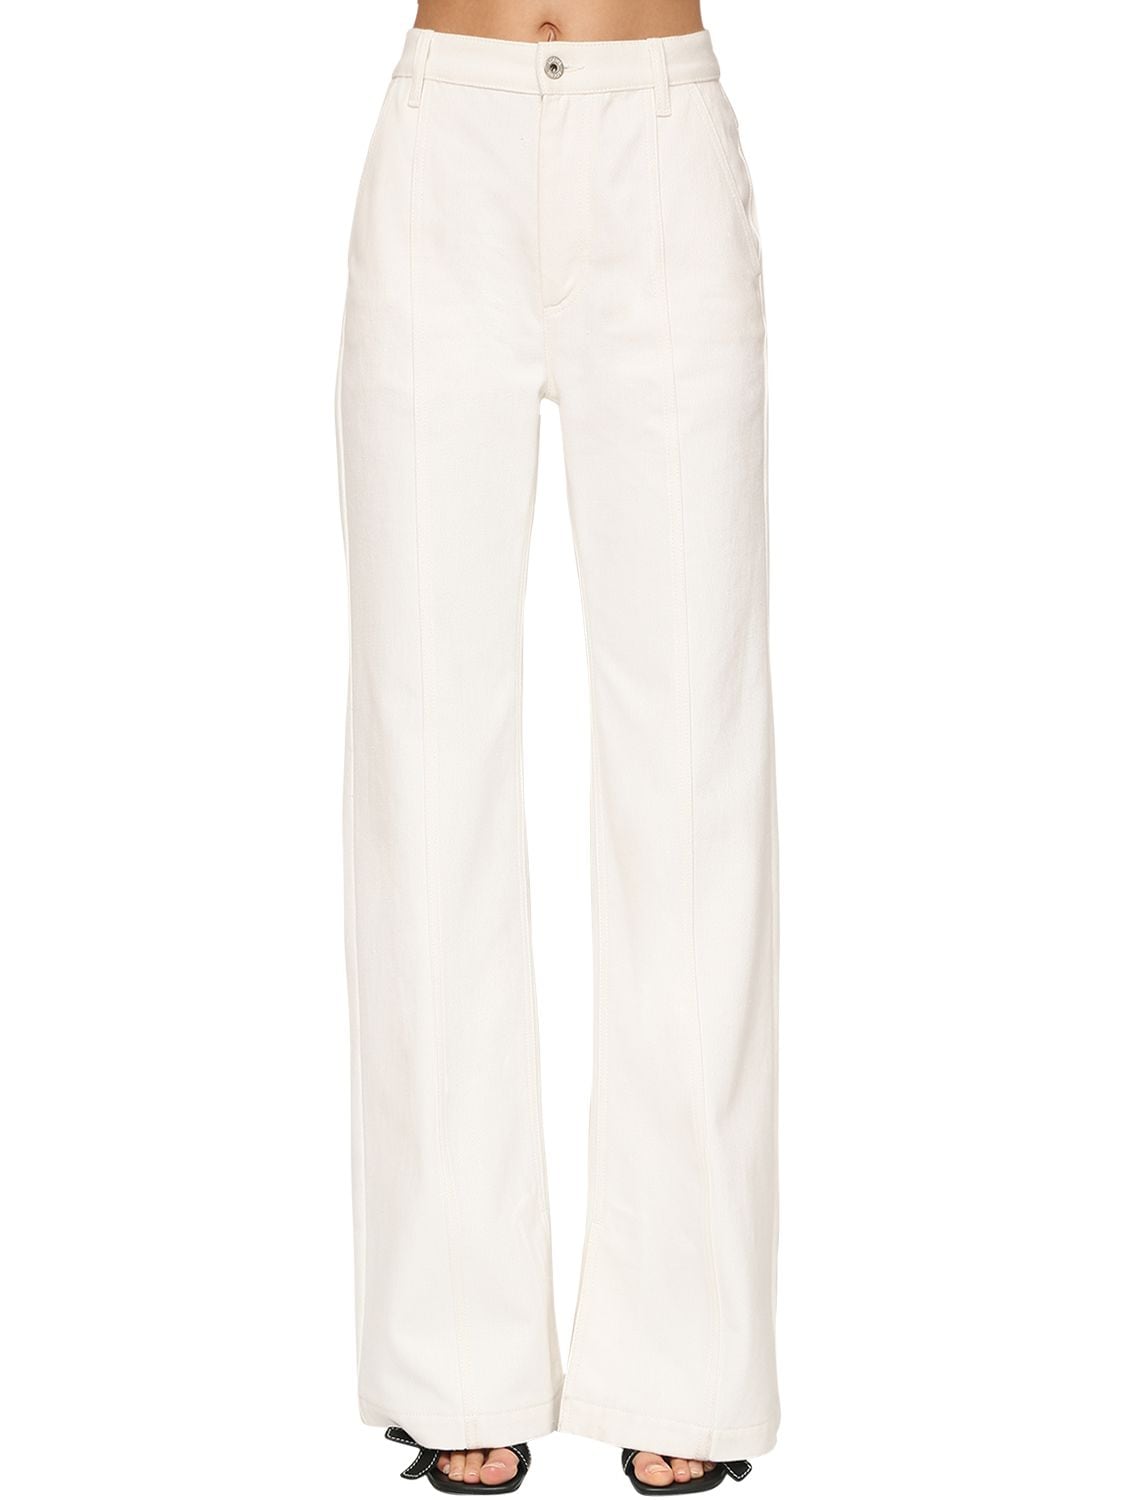 LOEWE - High waist cotton denim flared jeans - White | Luisaviaroma